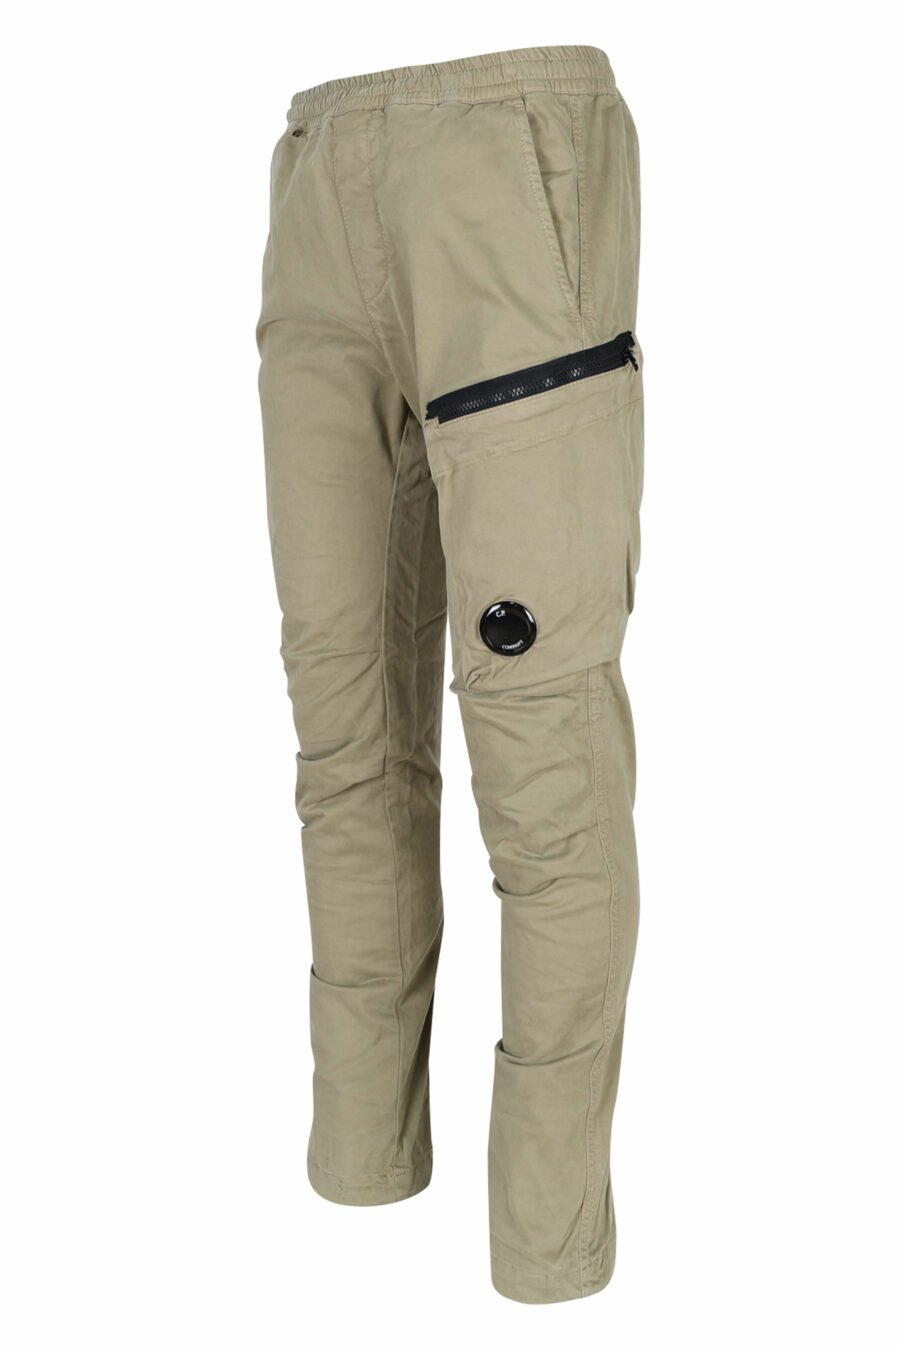 C.P. Company - Pantalón beige de satén elástico con bolsillo